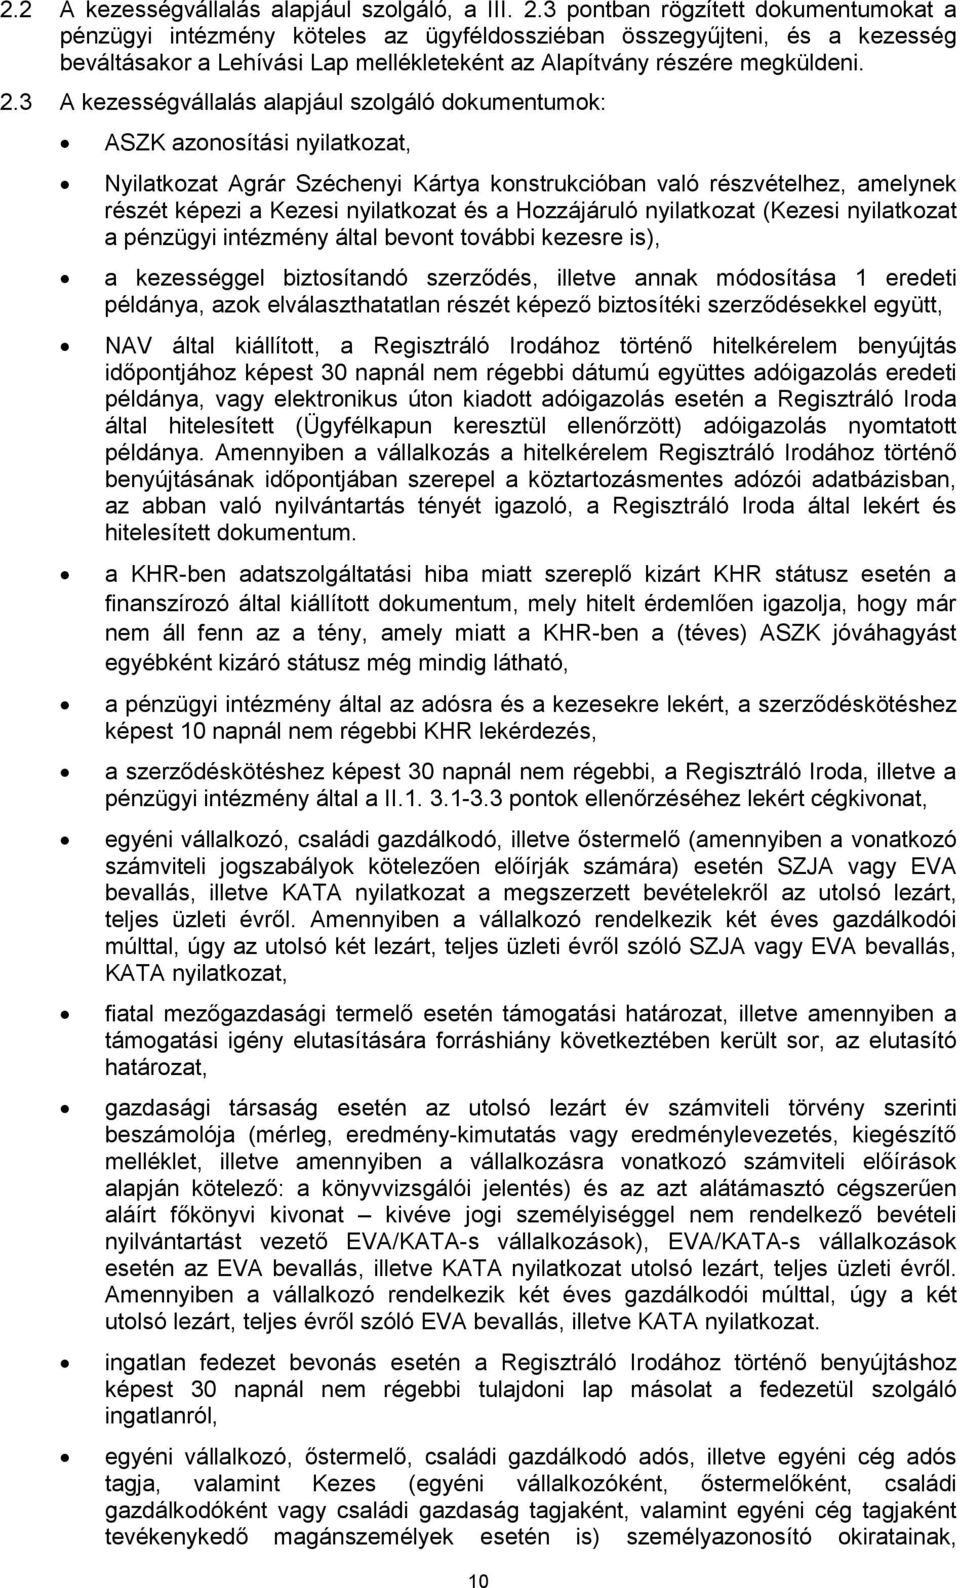 3 A kezességvállalás alapjául szolgáló dokumentumok: ASZK azonosítási nyilatkozat, Nyilatkozat Agrár Széchenyi Kártya konstrukcióban való részvételhez, amelynek részét képezi a Kezesi nyilatkozat és